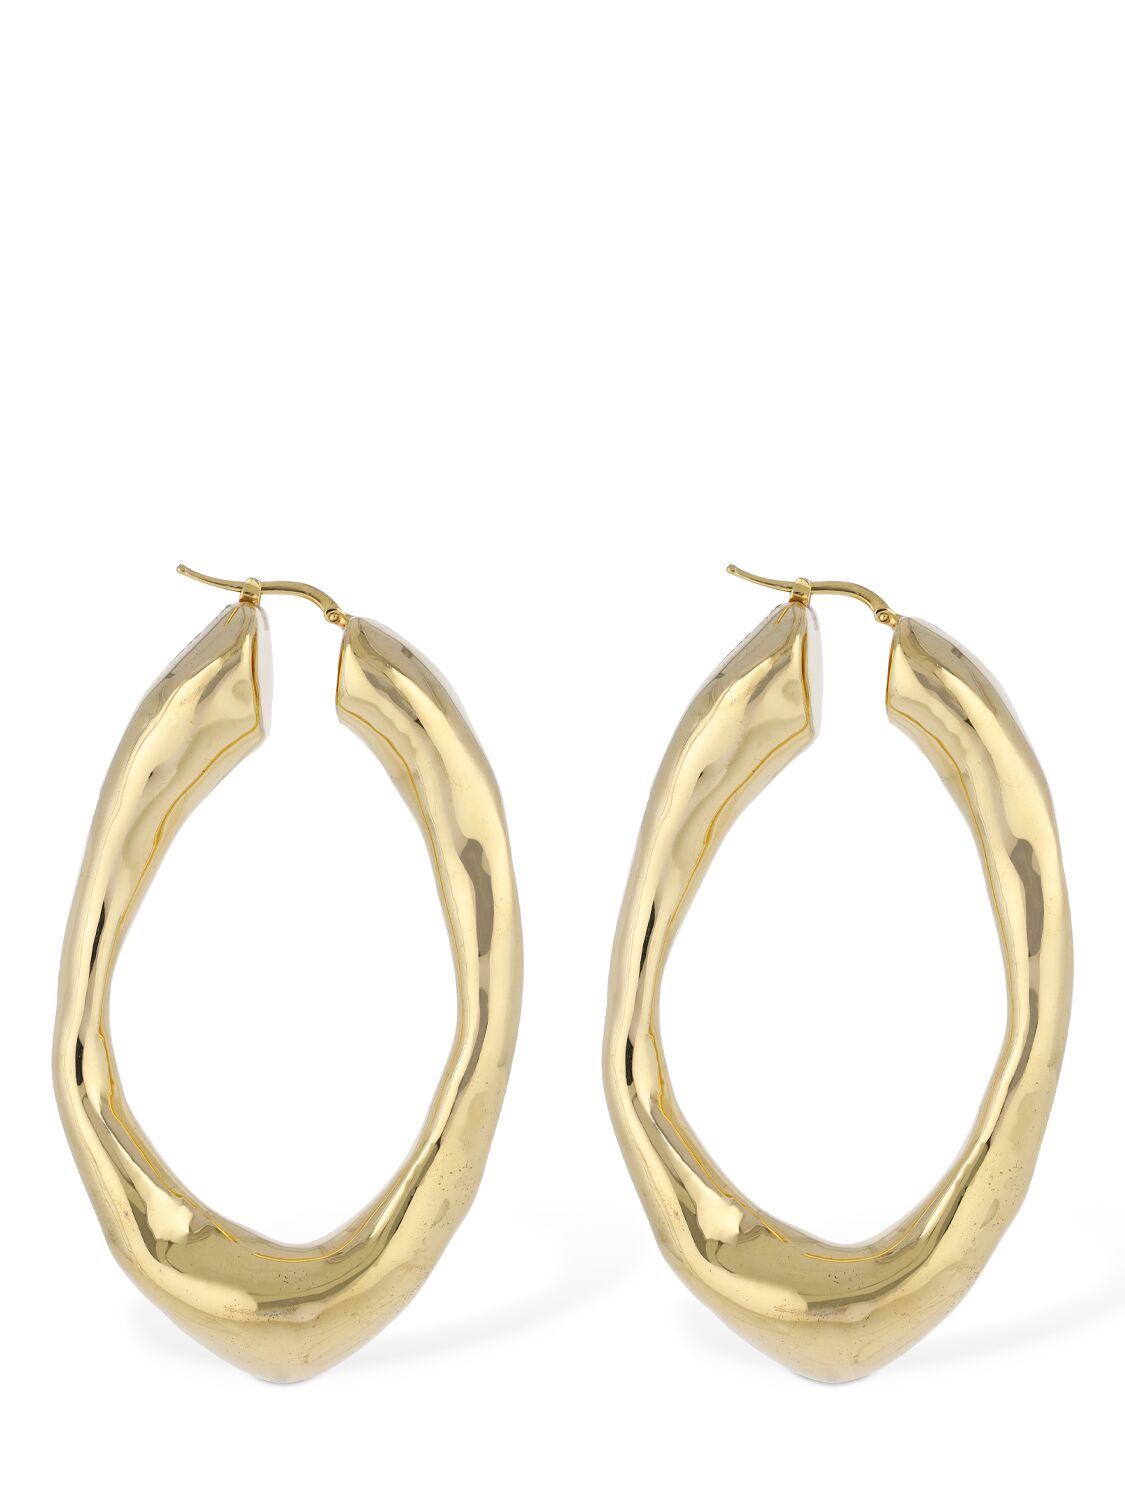 Jil Sander Bw5 1 Big Hoop Earrings In Gold